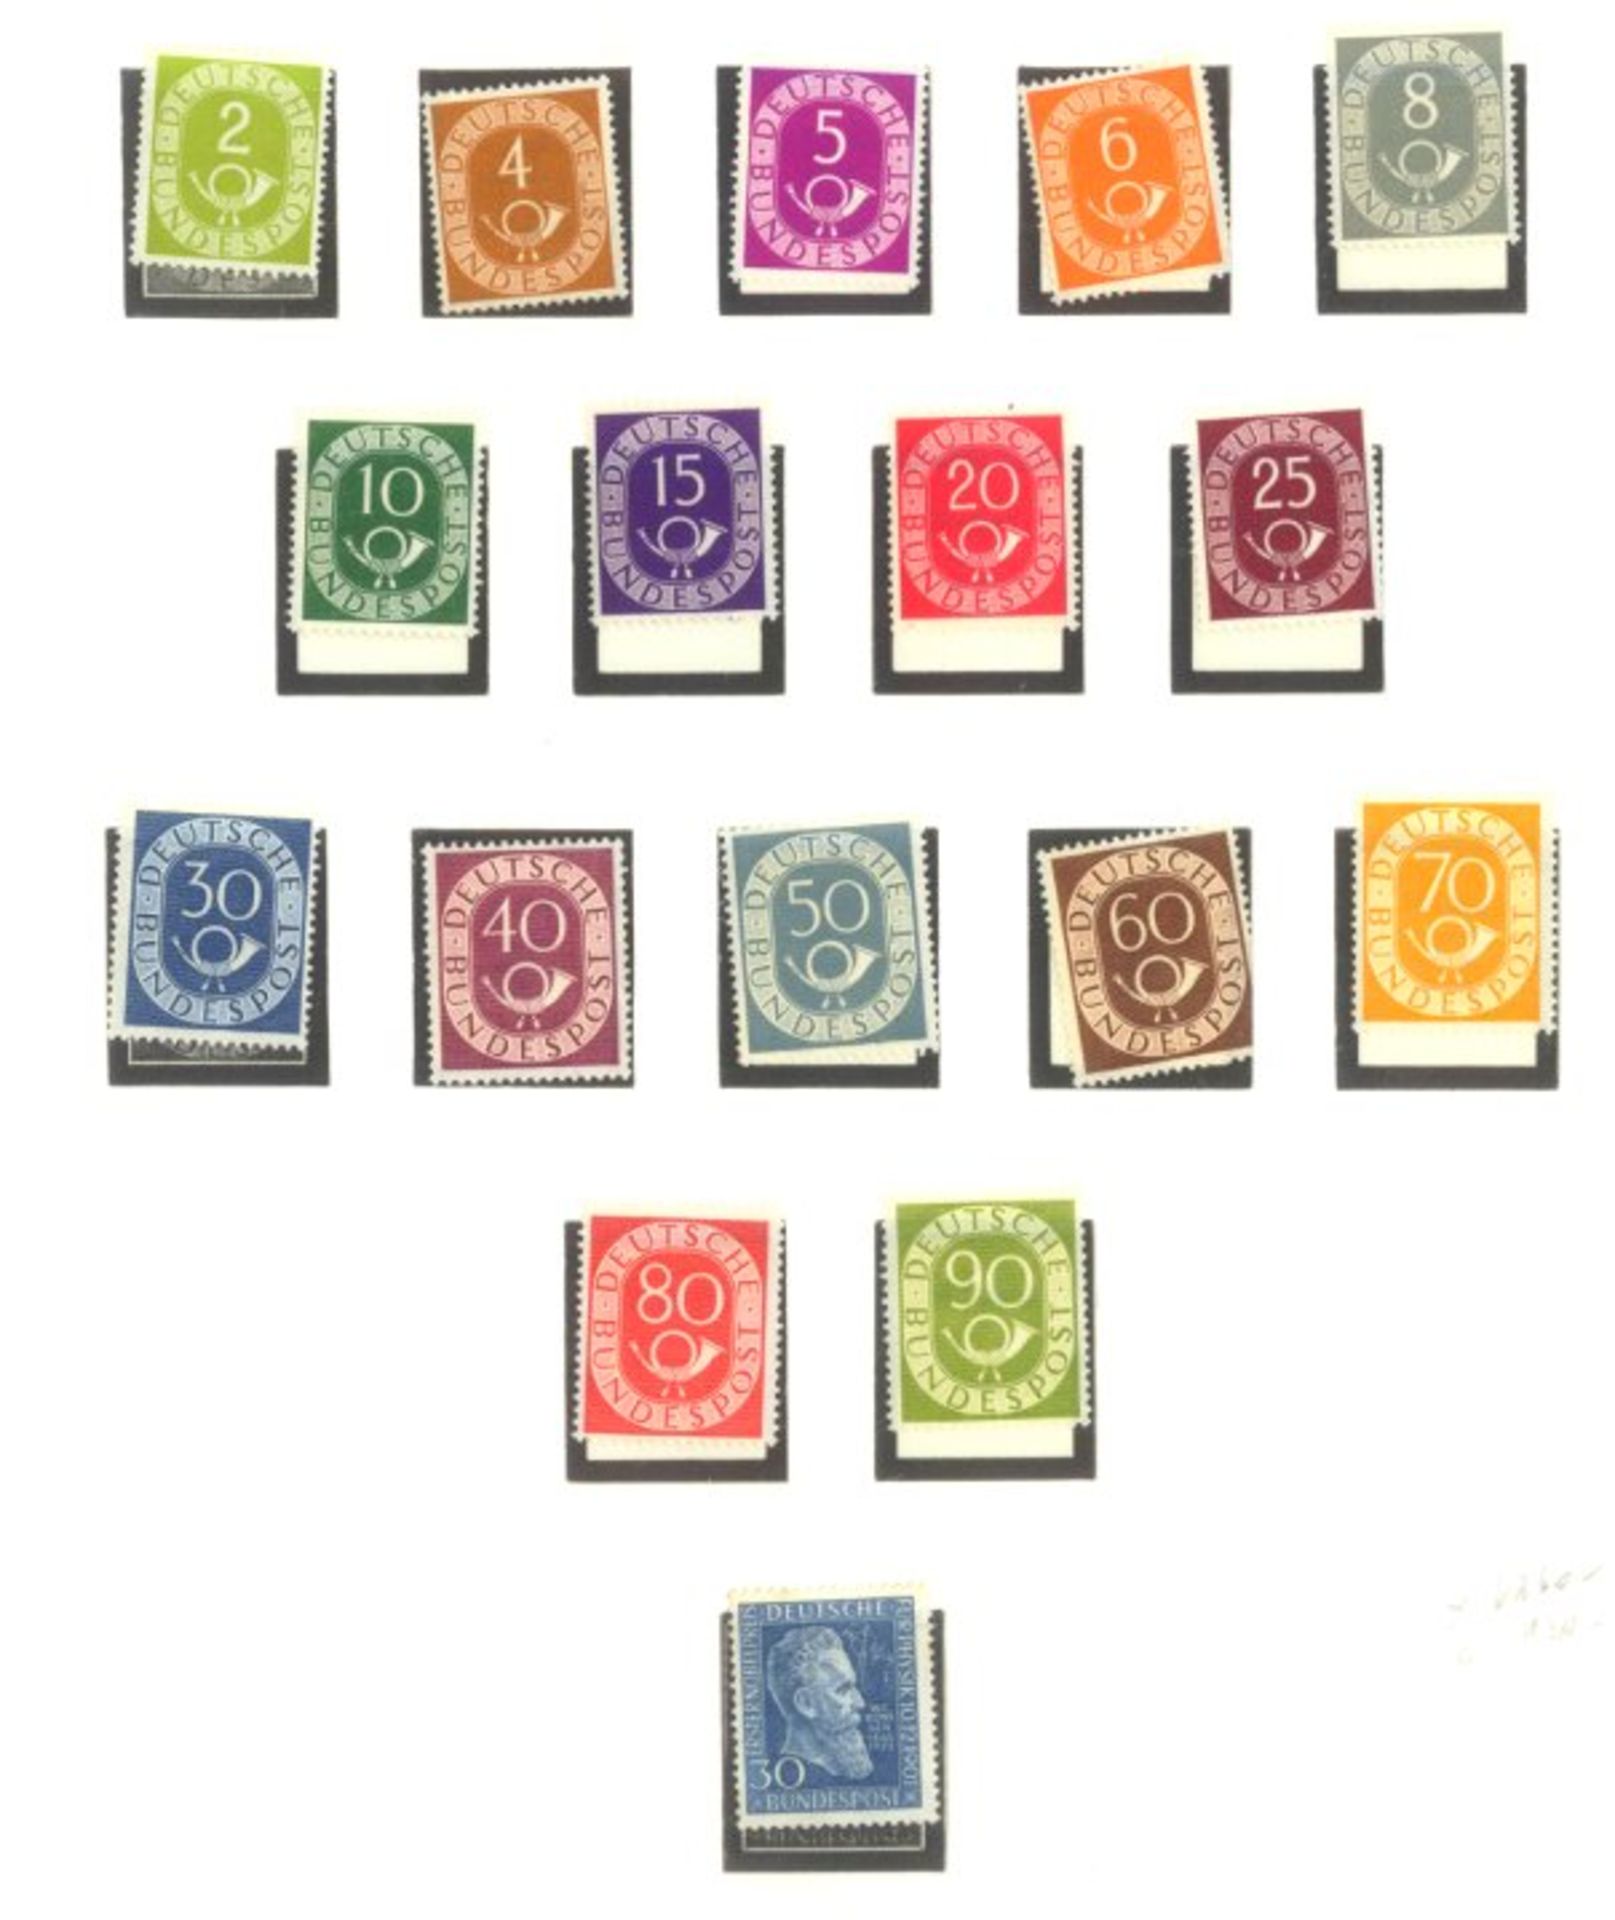 BUND 1949-1986sehr saubere postfrische Sammlung auf LINDNER -Falzlosblättern mit 3 Ringbindern. In - Bild 4 aus 9